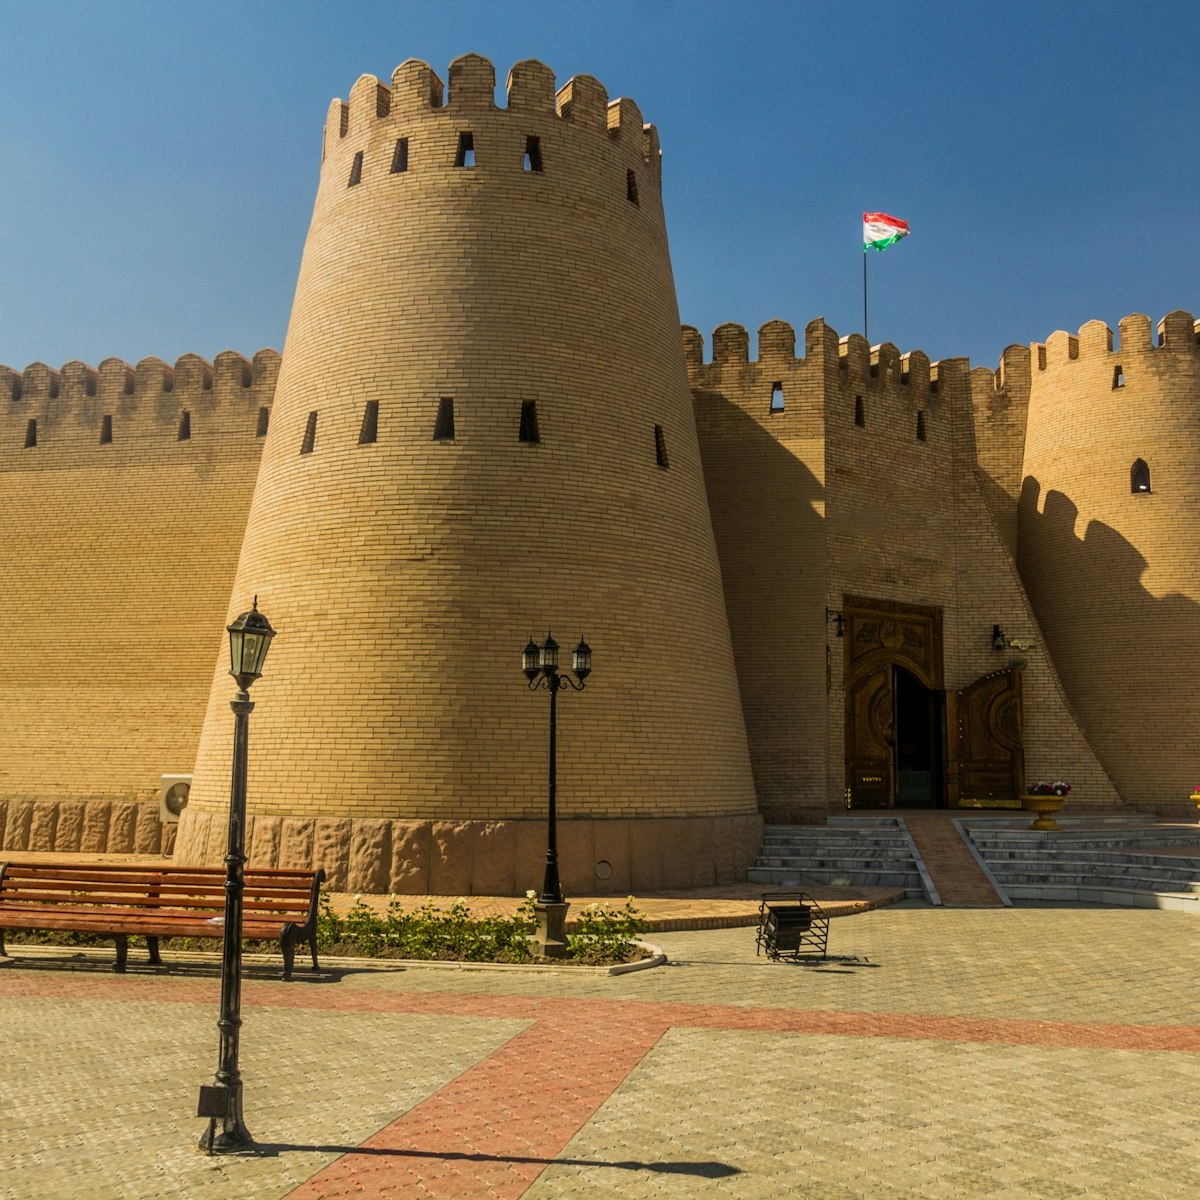 Citadel walls in Khujand, Tajikistan.